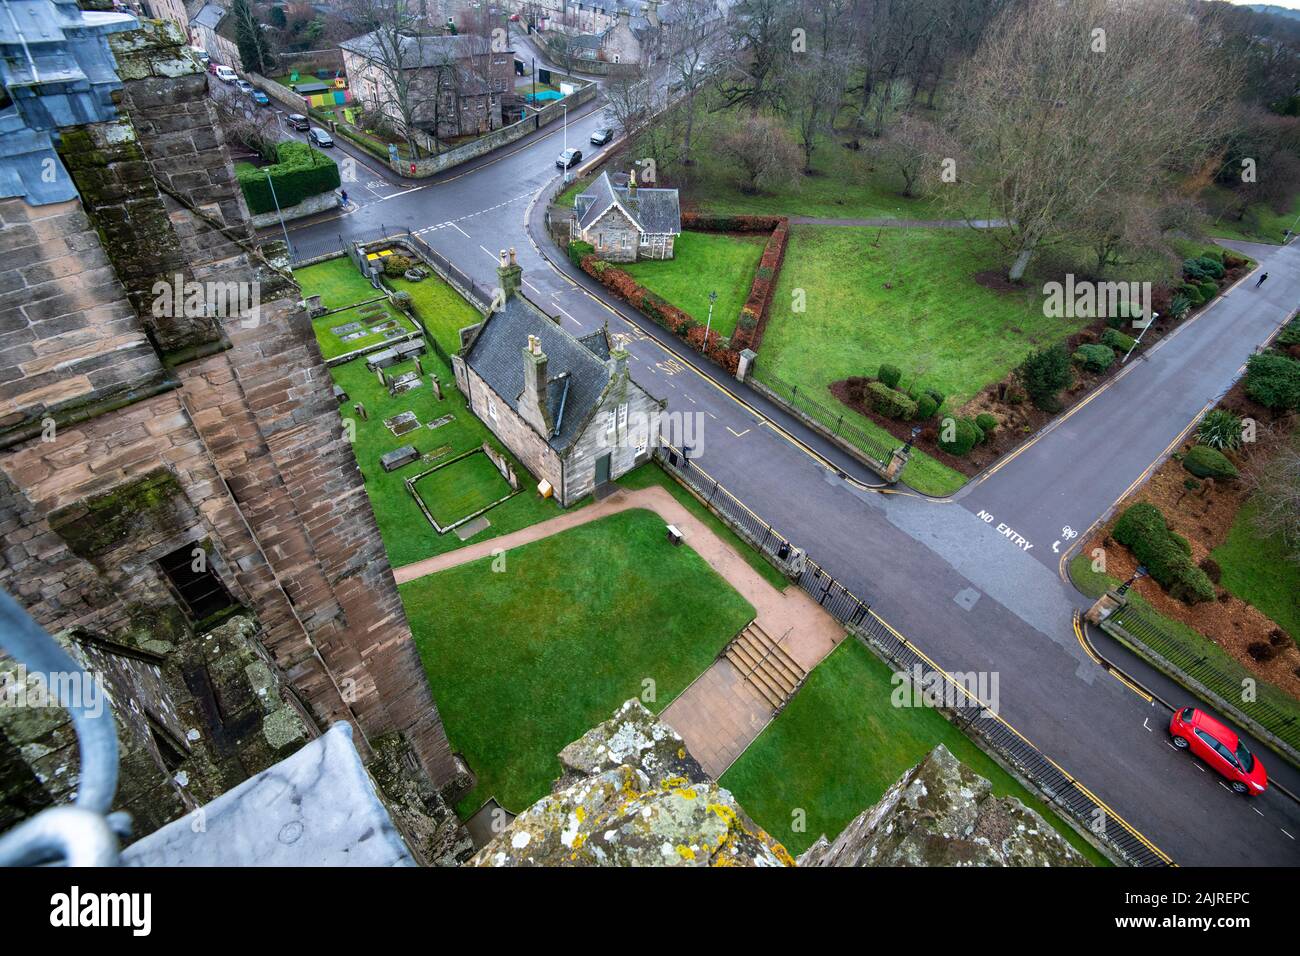 Elgin Cathedral, Moray, Scotland, UK Stock Photo